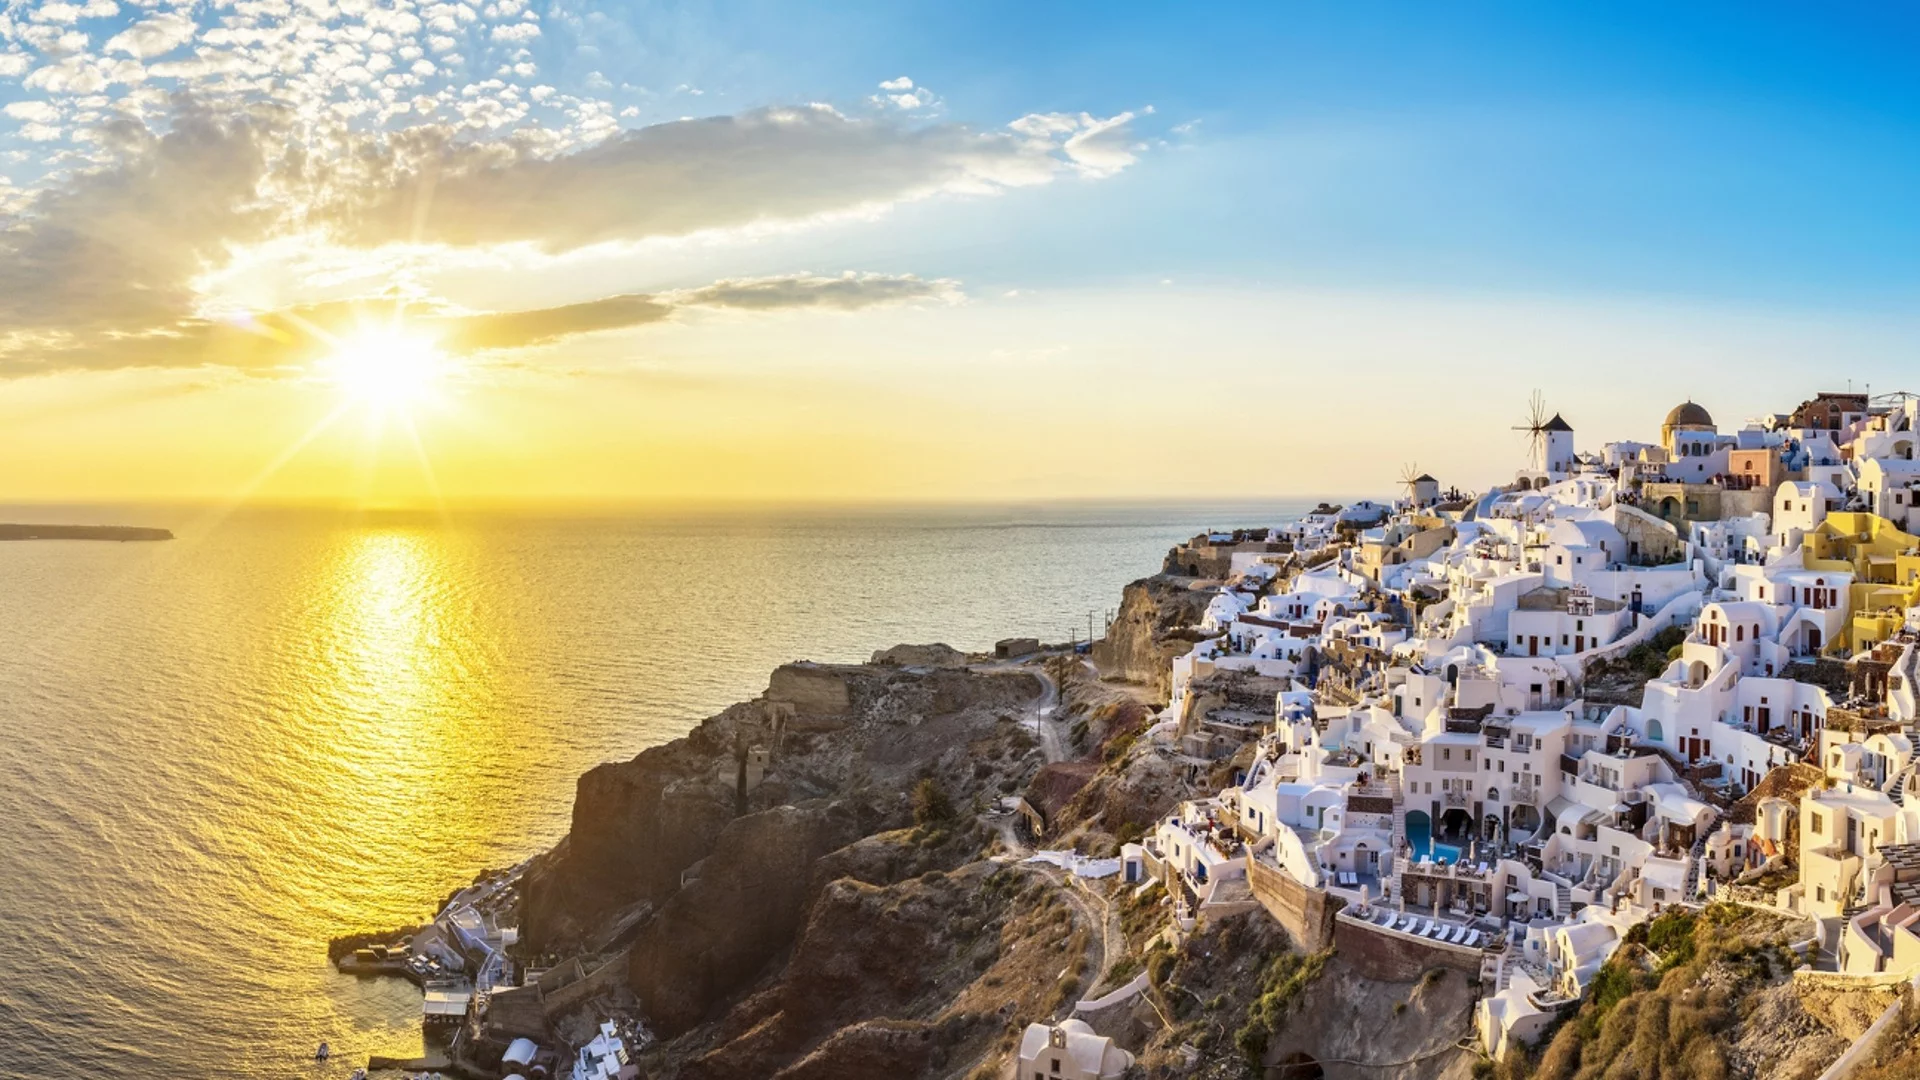 Най-невероятните гръцки острови, които да посетите (СНИМКИ)